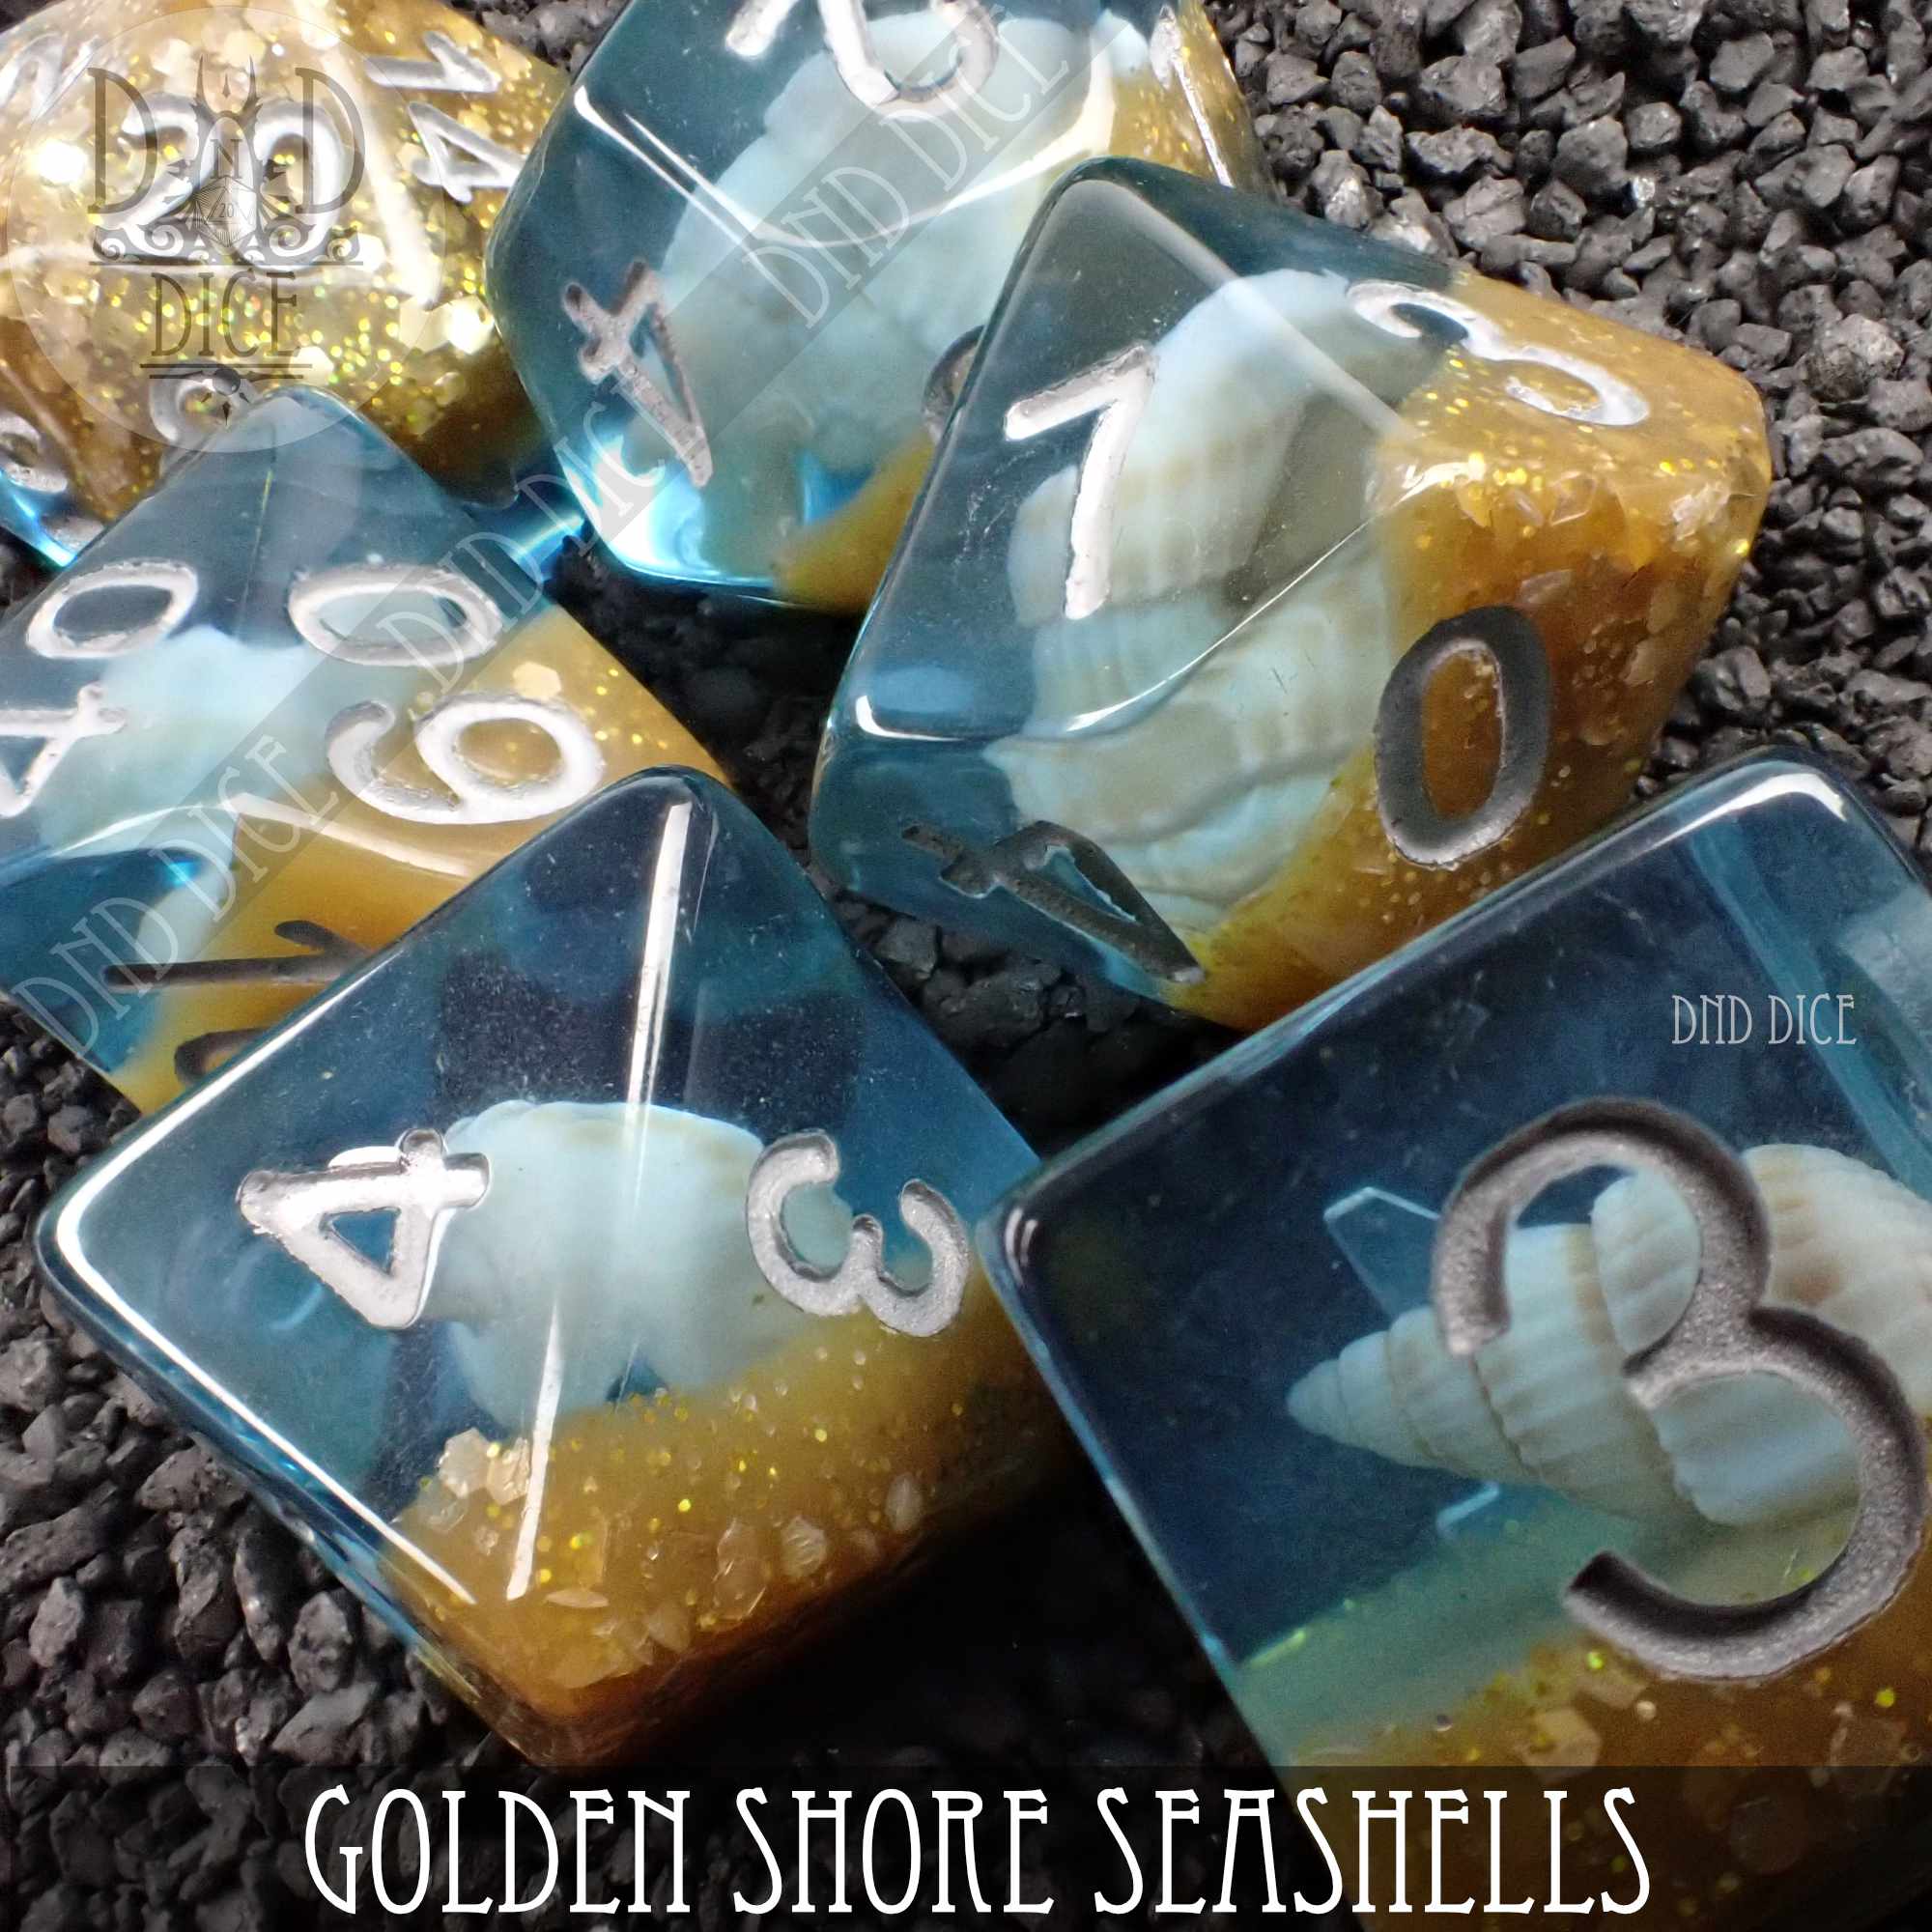 Golden Shore Seashells Dice Set